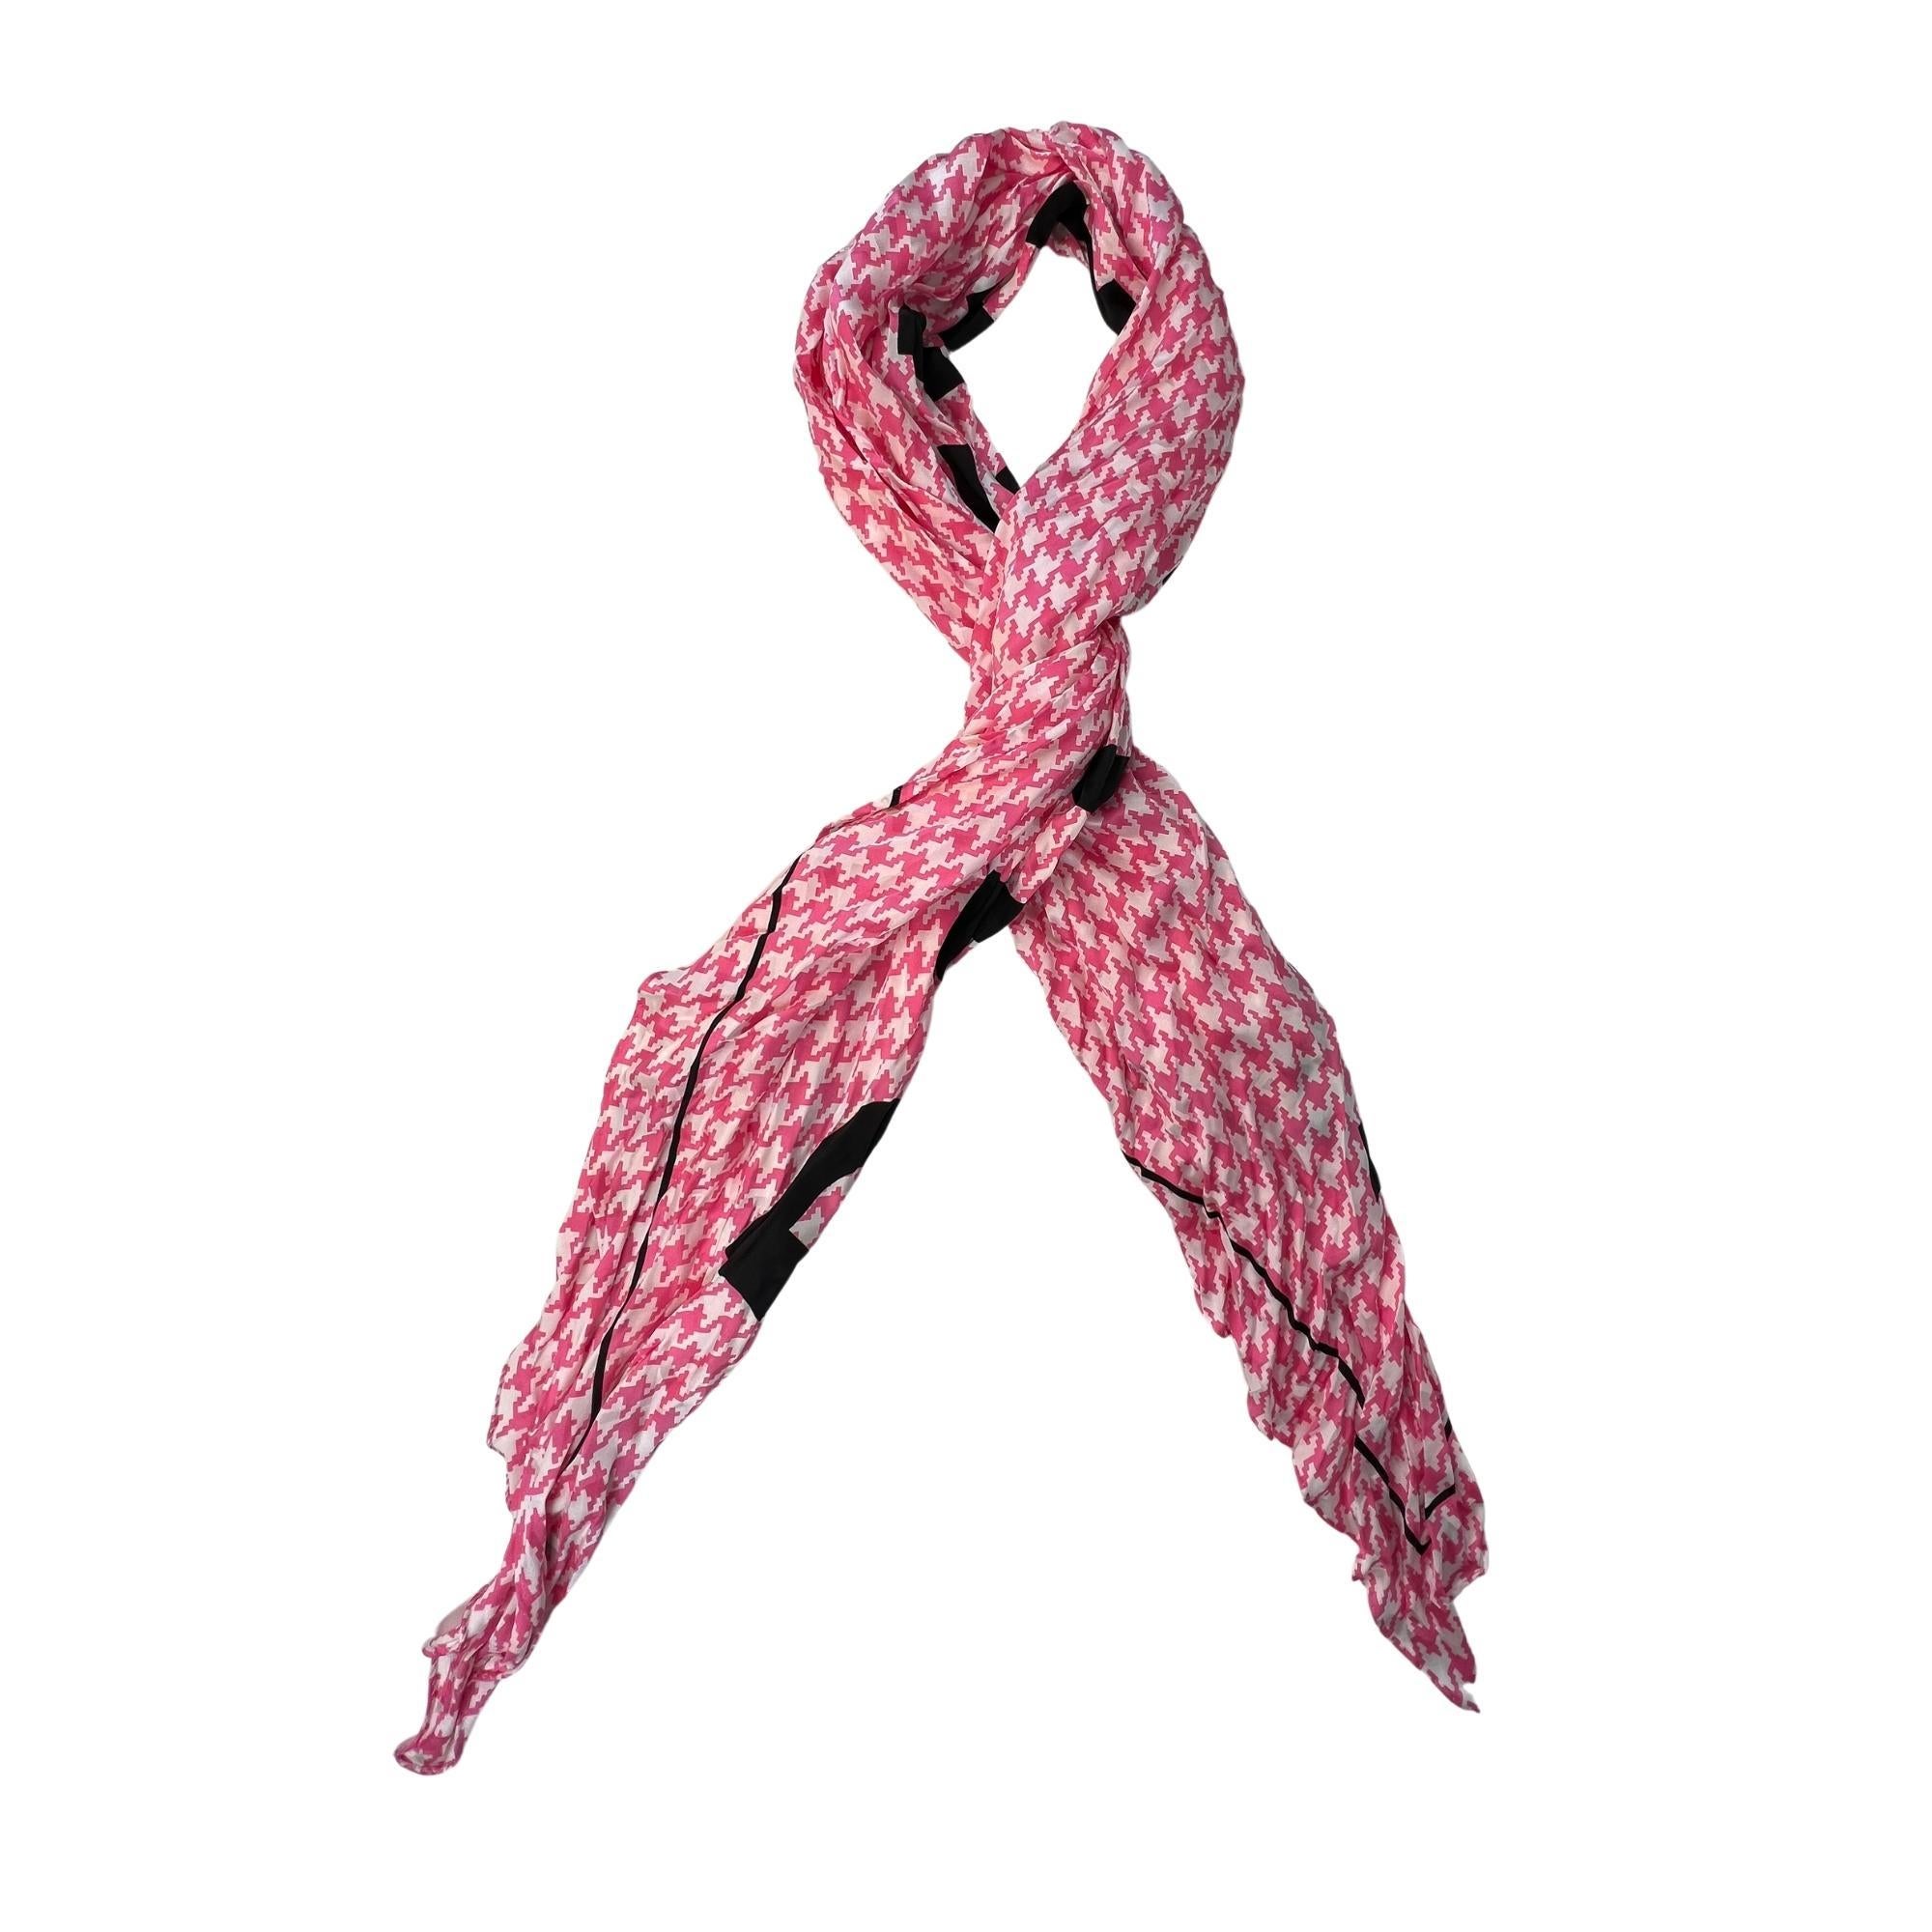 Cette écharpe en soie légèrement froissée présente un imprimé jacquard pied-de-poule rose vif et le logo Balenciaga en lettres noires audacieuses. Nouez-le à votre queue de cheval, à la sangle de votre fourre-tout préféré ou au motif classique du